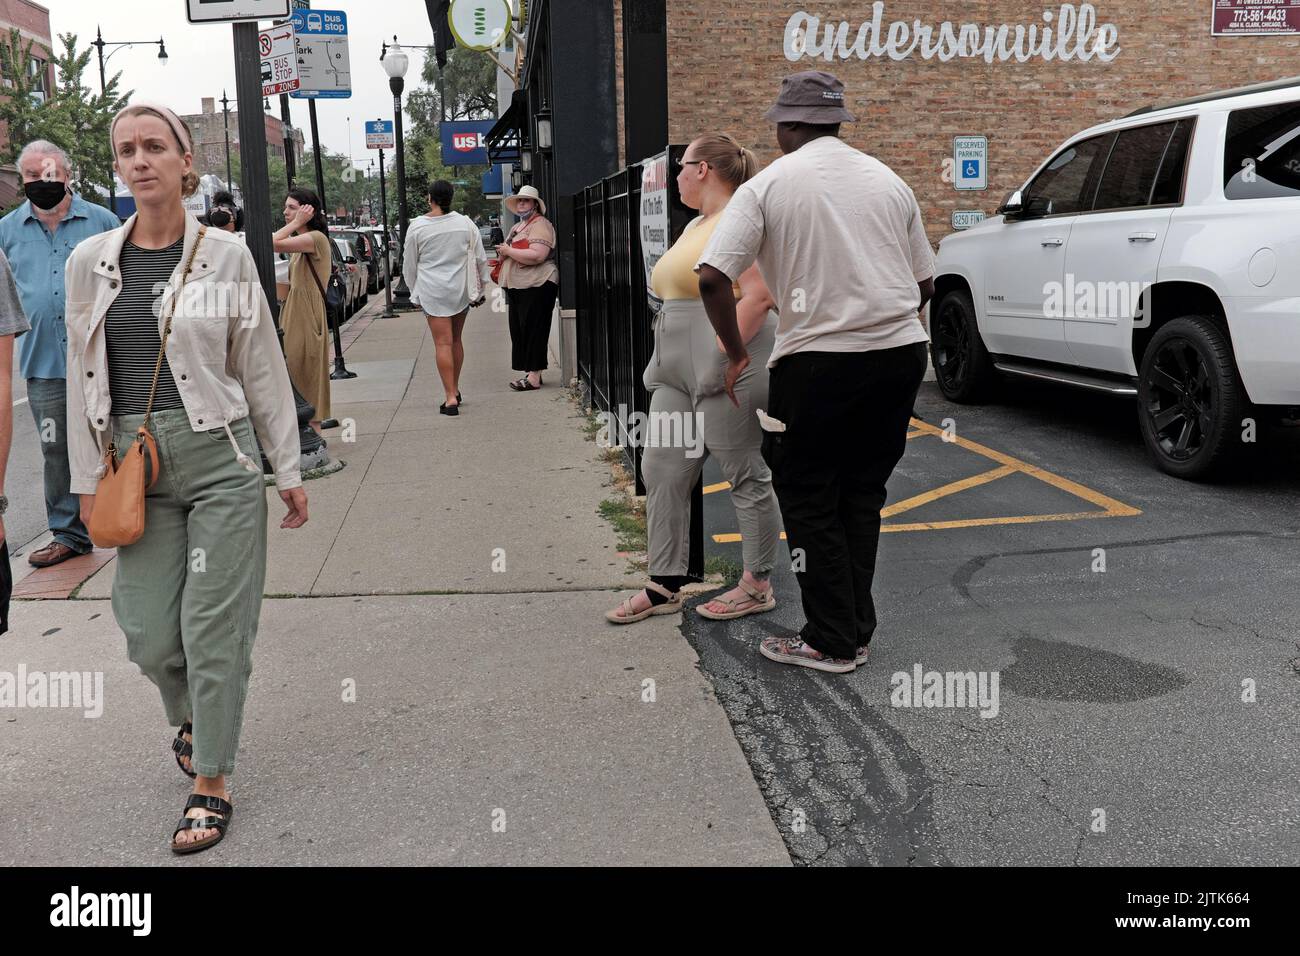 Las personas en las aceras de Andersonville, Chicago, Illinois, crean un animado paisaje urbano. Foto de stock